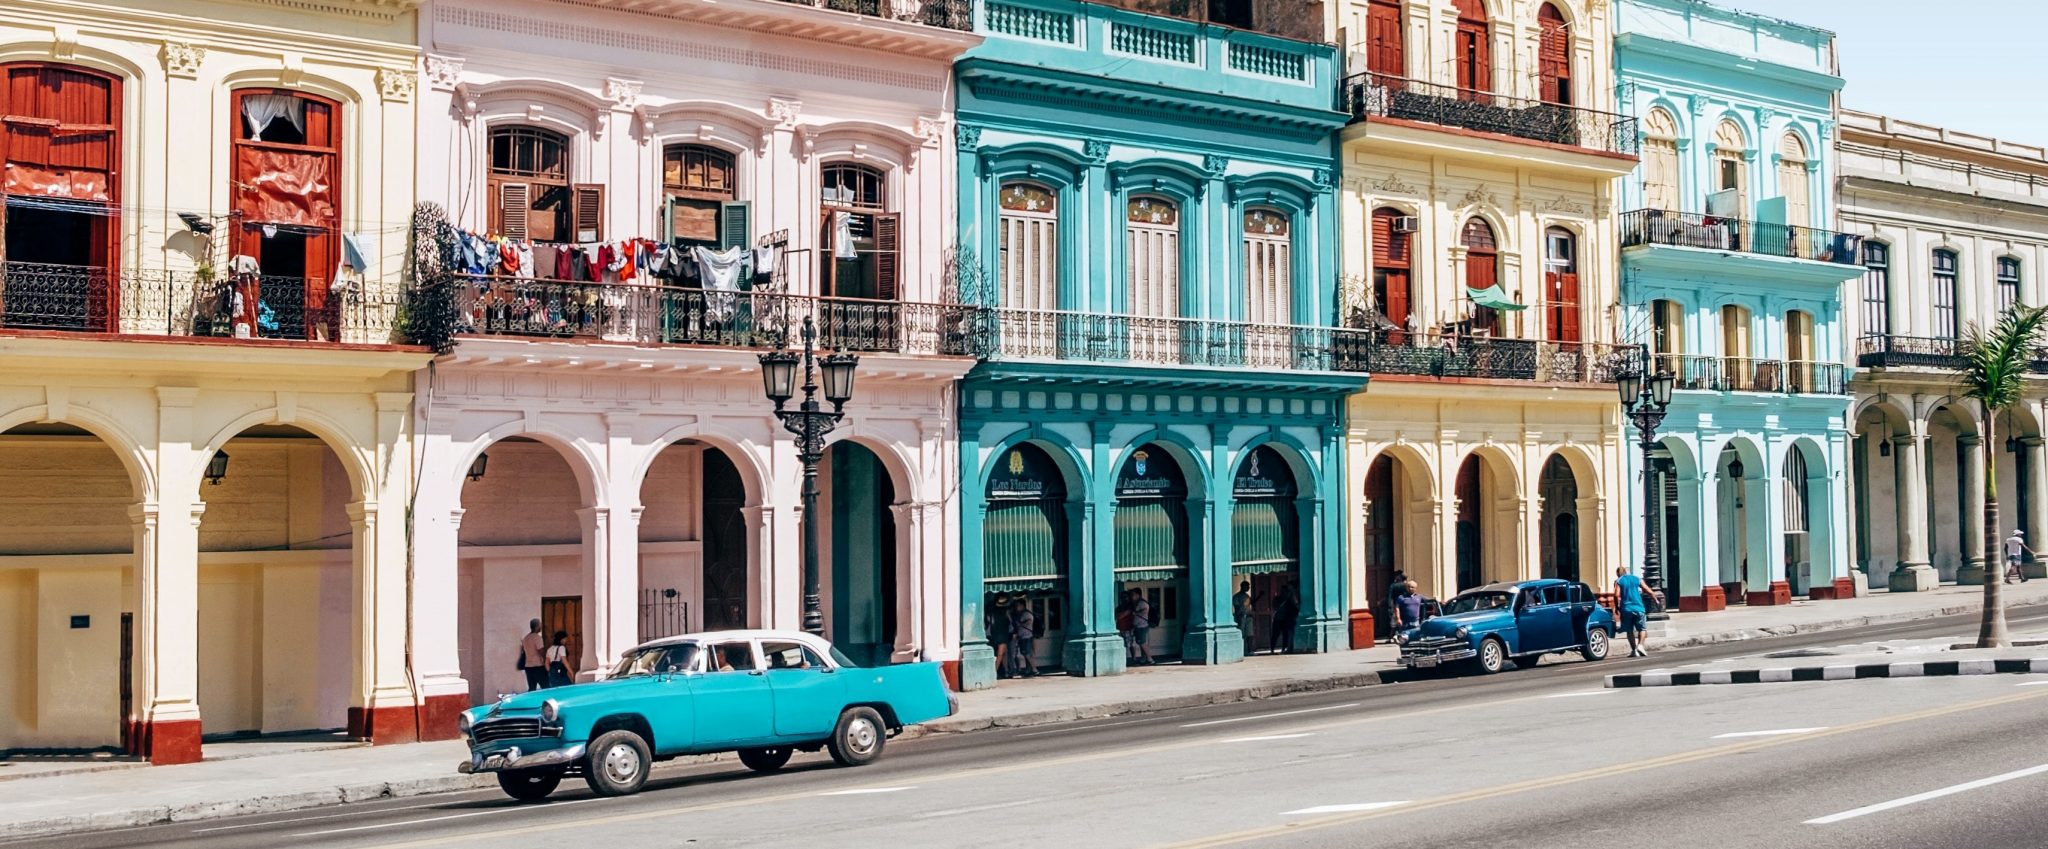 Can Americans Visit Cuba?